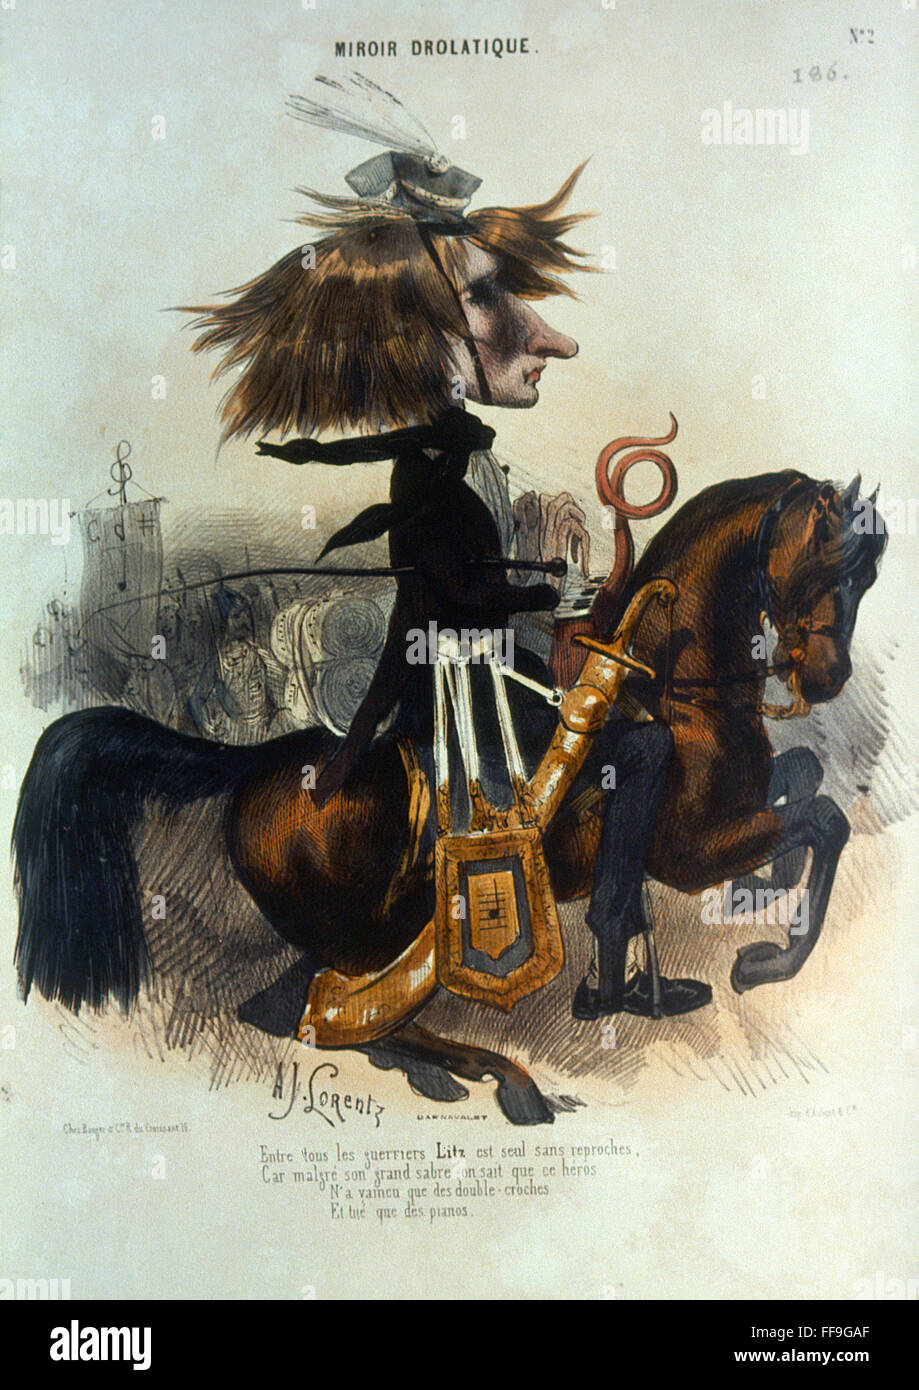 FRANZ LISZT (1811-1886). NHungarian /pianiste et compositeur. Comme un  soldat hongrois, à jouer du piano à cheval. Caricature lithographie, 1842,  par Alcide Joseph Lorentz Photo Stock - Alamy